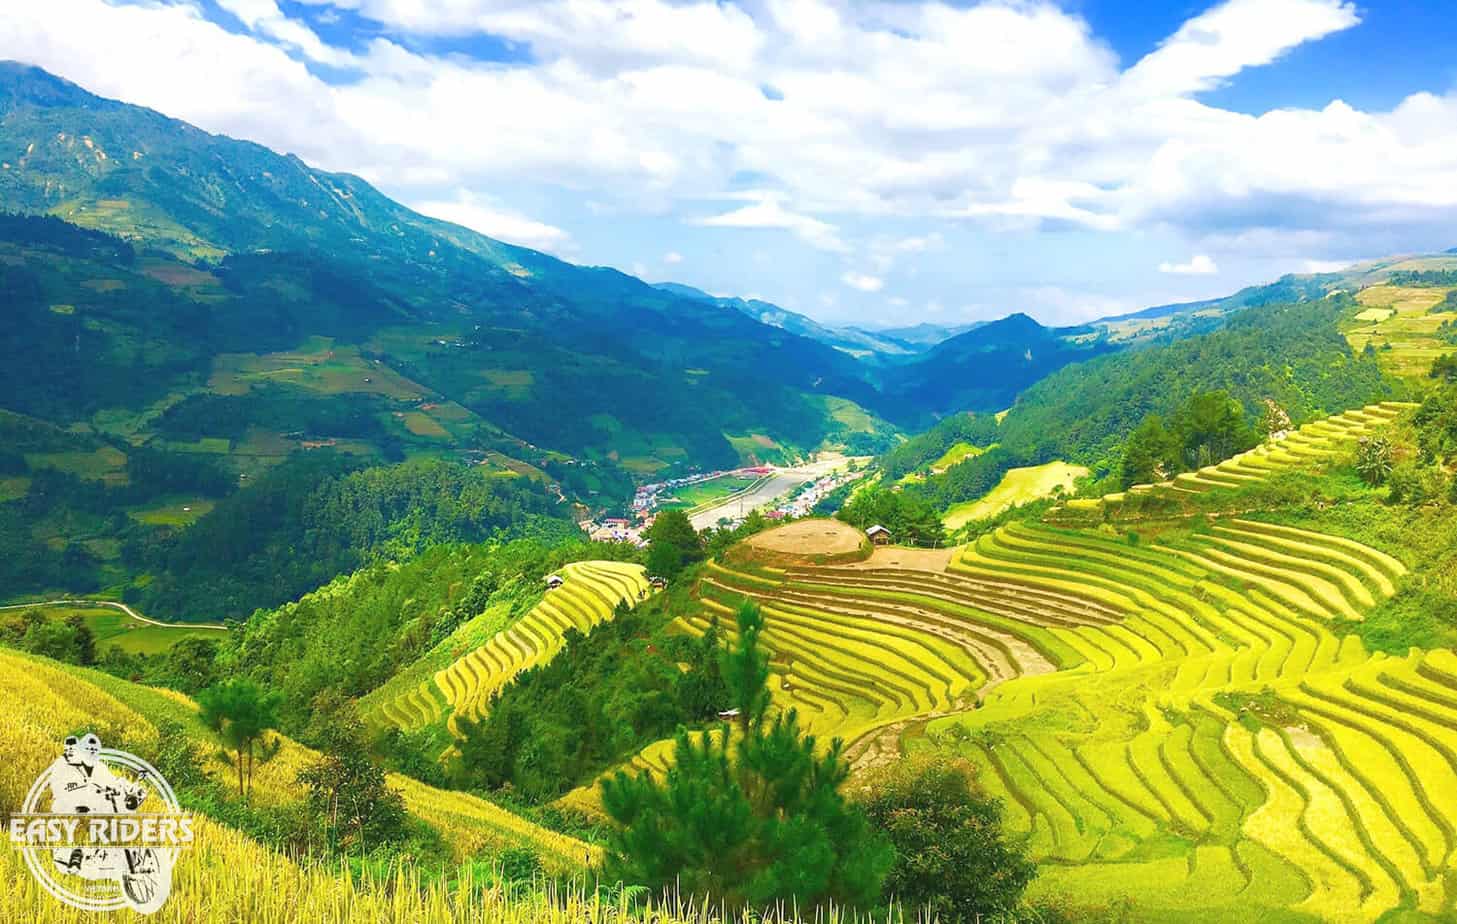 Rice terraces in Y Ty, Lao Cai, Vietnam